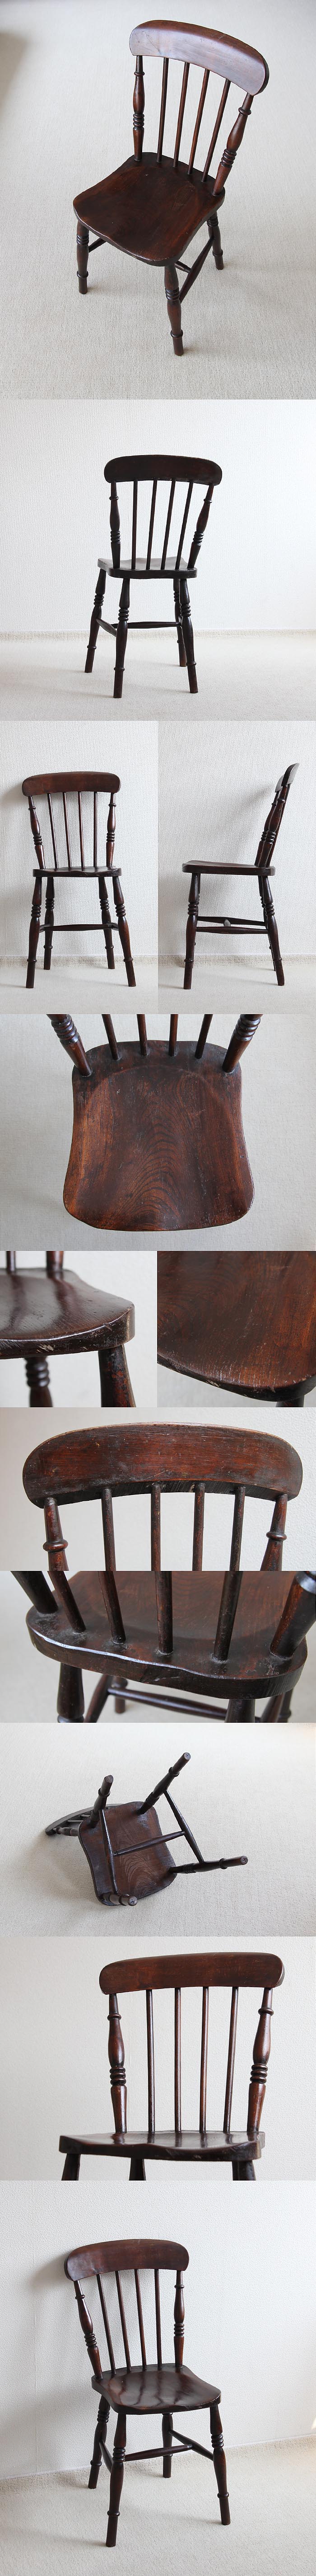 イギリス アンティーク キッチンチェア 古木 木製椅子 家具 インテリア「一枚板座面」V-853